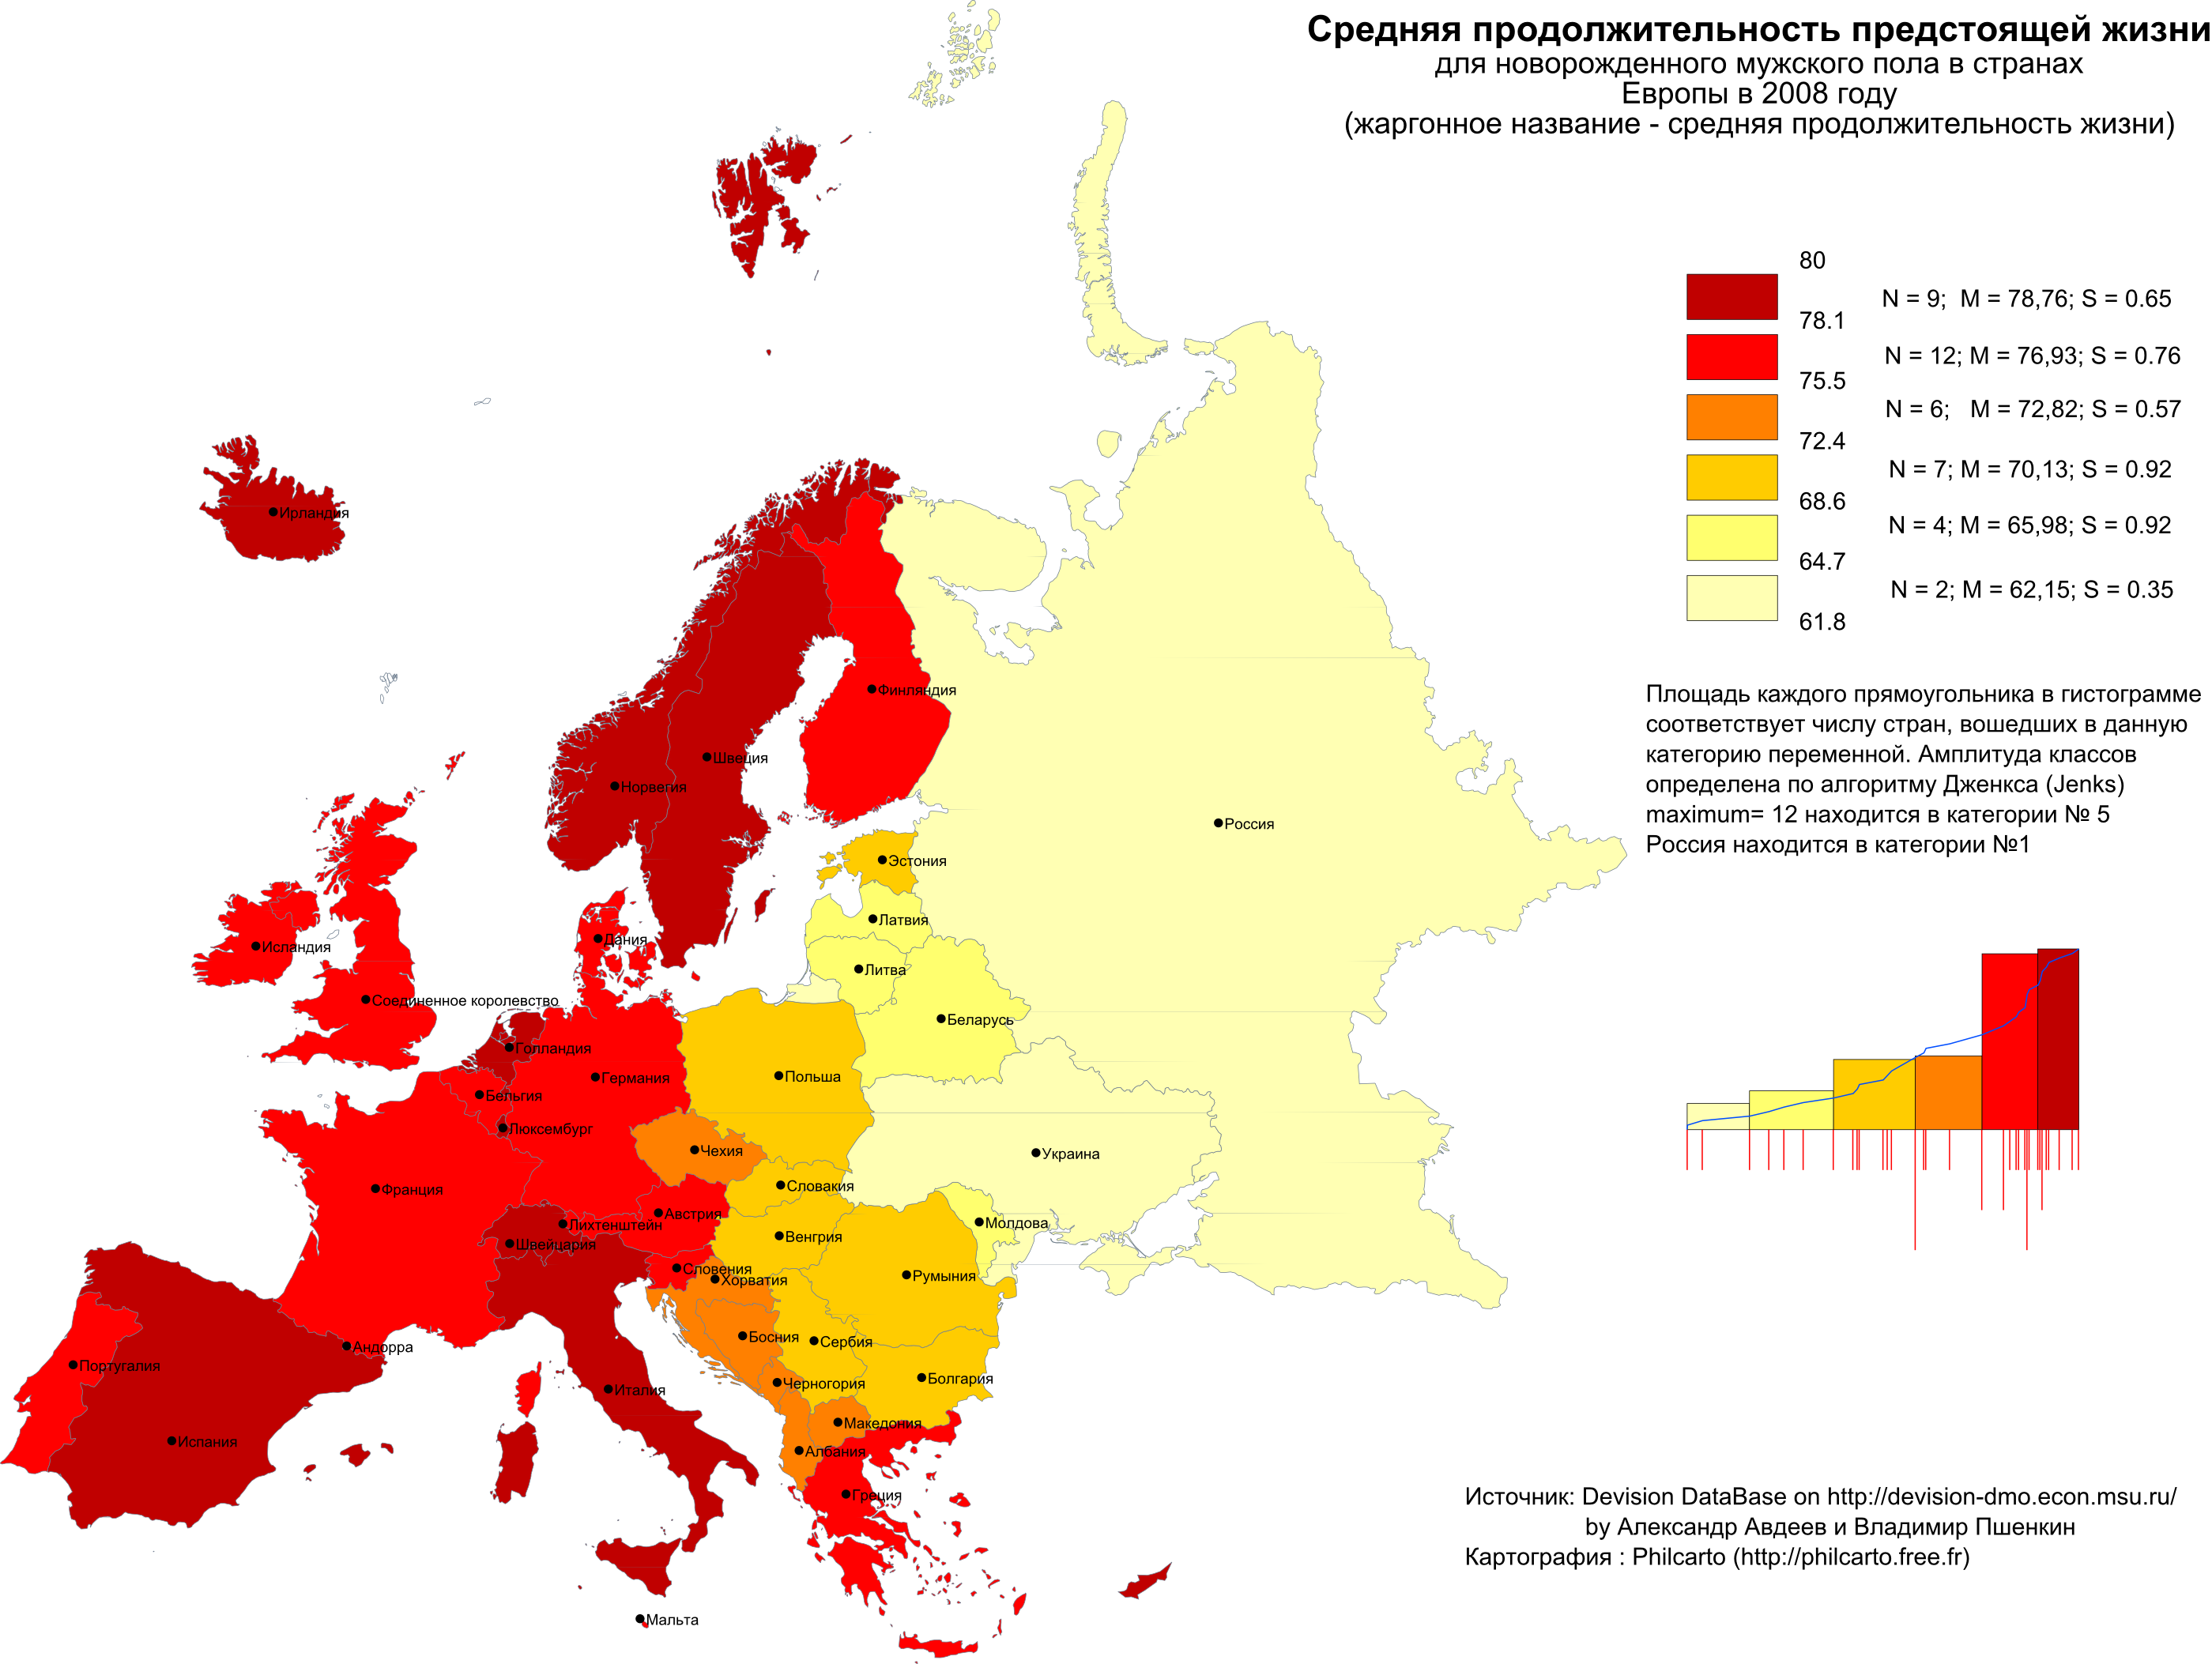 Средняя продолжительность в европе. Средняя Продолжительность жизни в Европе. Продолжительность жизни в Европе по странам. Карта продолжительности жизни. Продолжительность жизни в странах Европы.